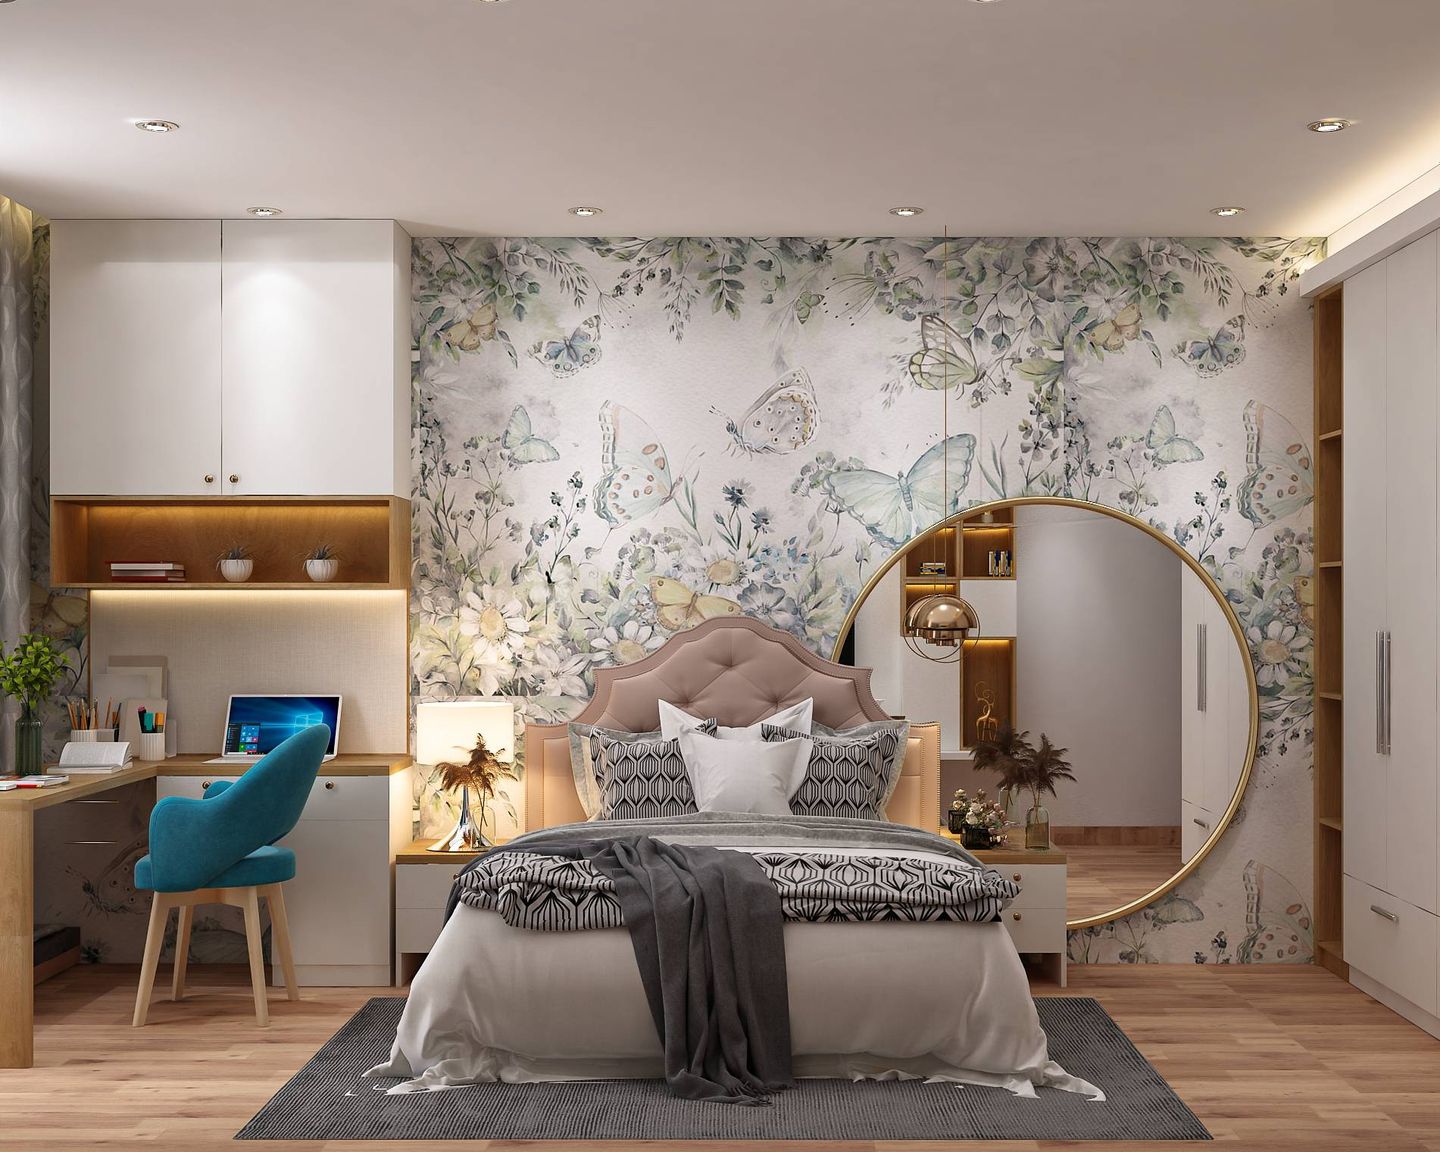 Master Bedroom Design With Vintage Floral Wallpaper - Livspace